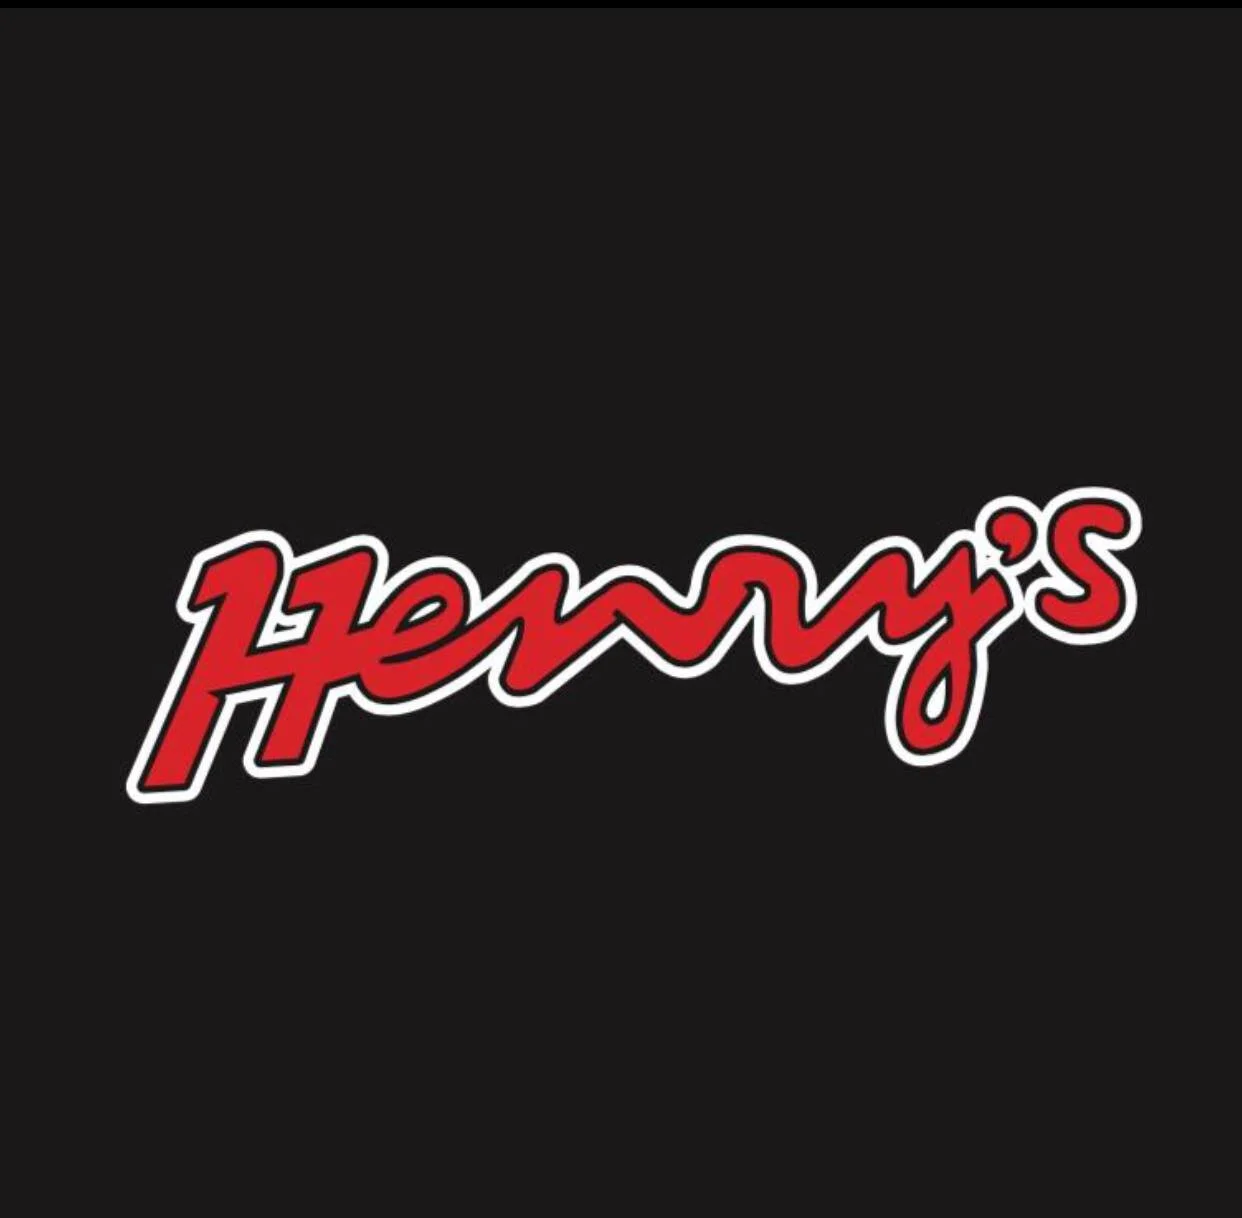 Henry's-6535